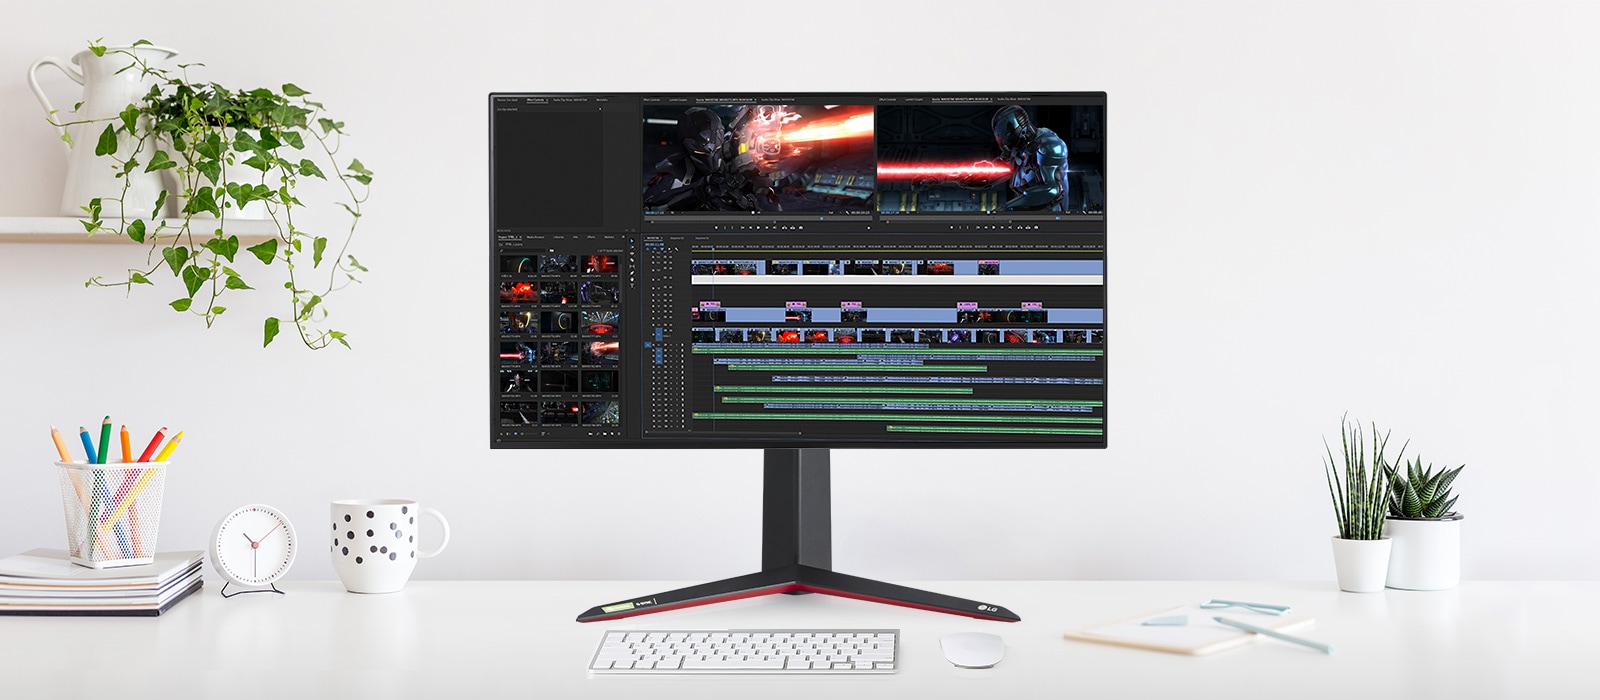 El monitor soportando resolución 4K UHD cubriendo el 98% del espectro de color DCI-P3 y color de 10 Bits.